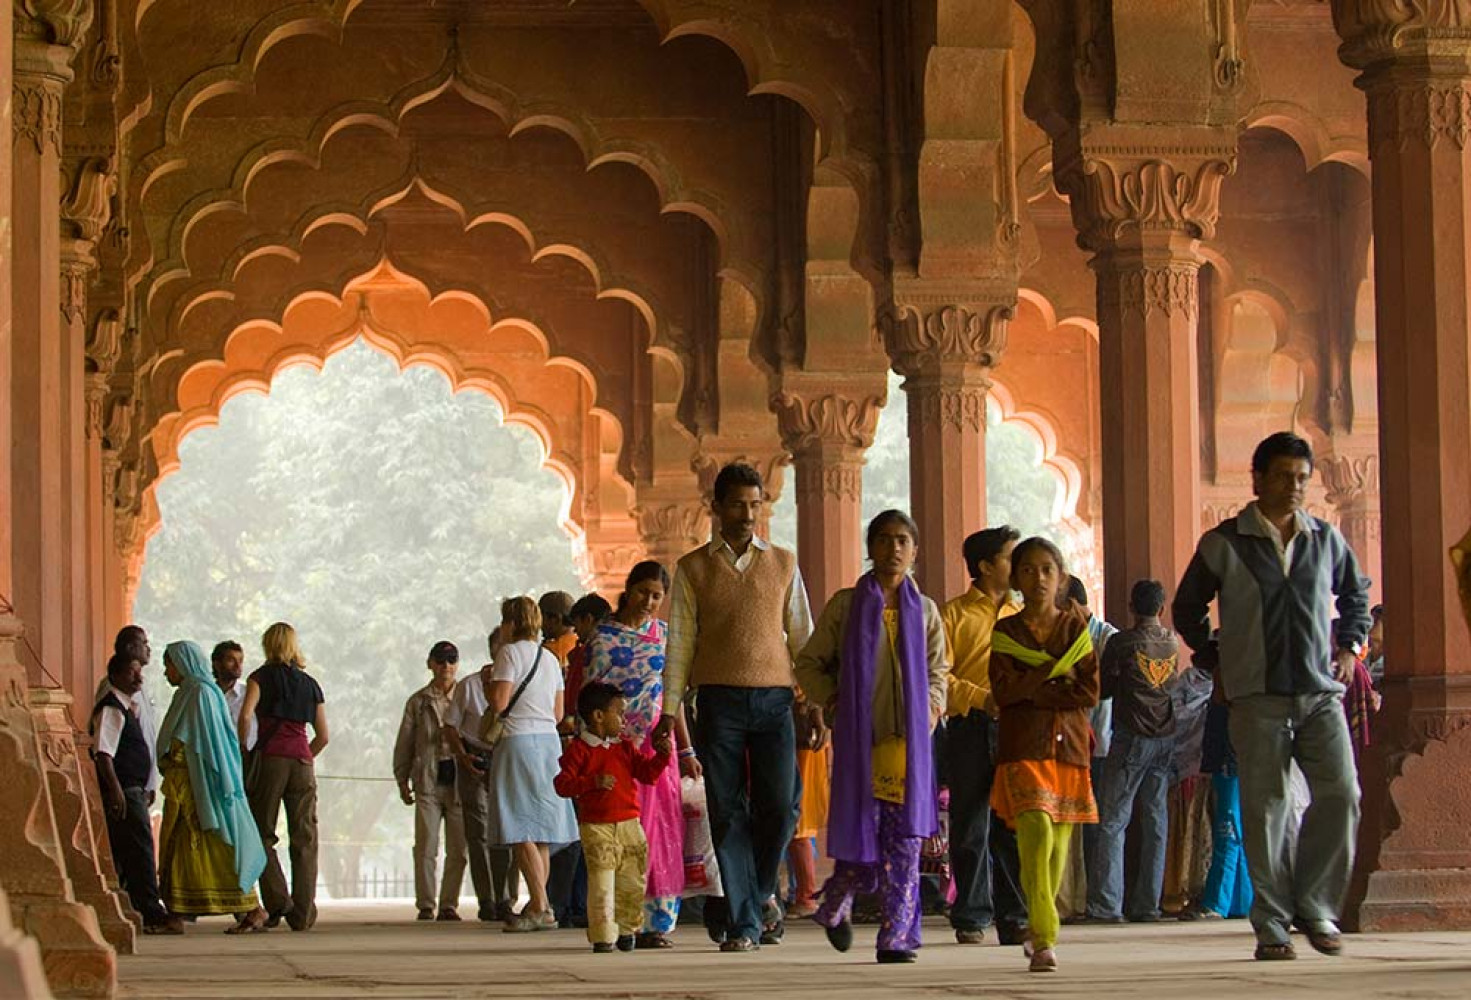 Hindistan hakkında 10 ilginç bilgi